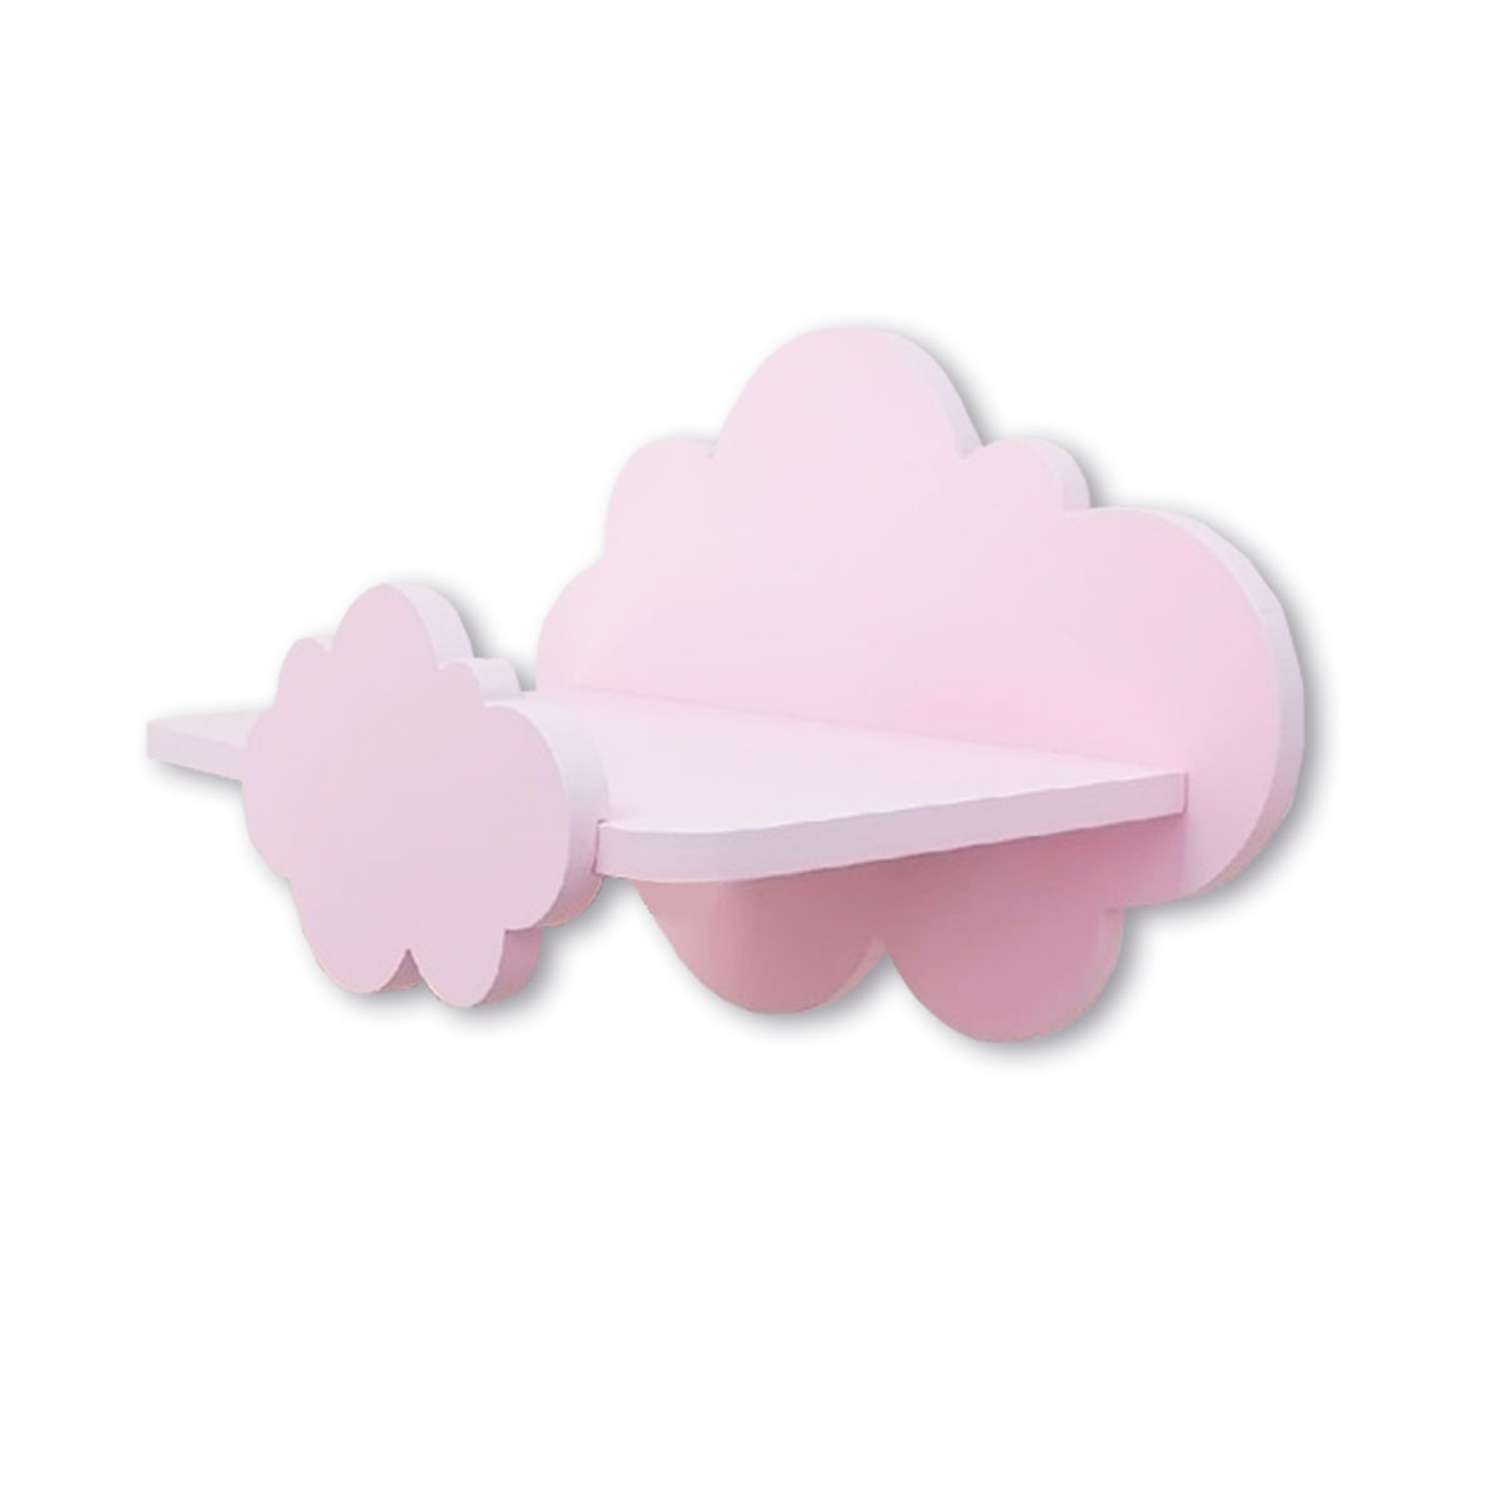 Полки для детской Pema kids набор облака розовые 2 шт МДФ - фото 2